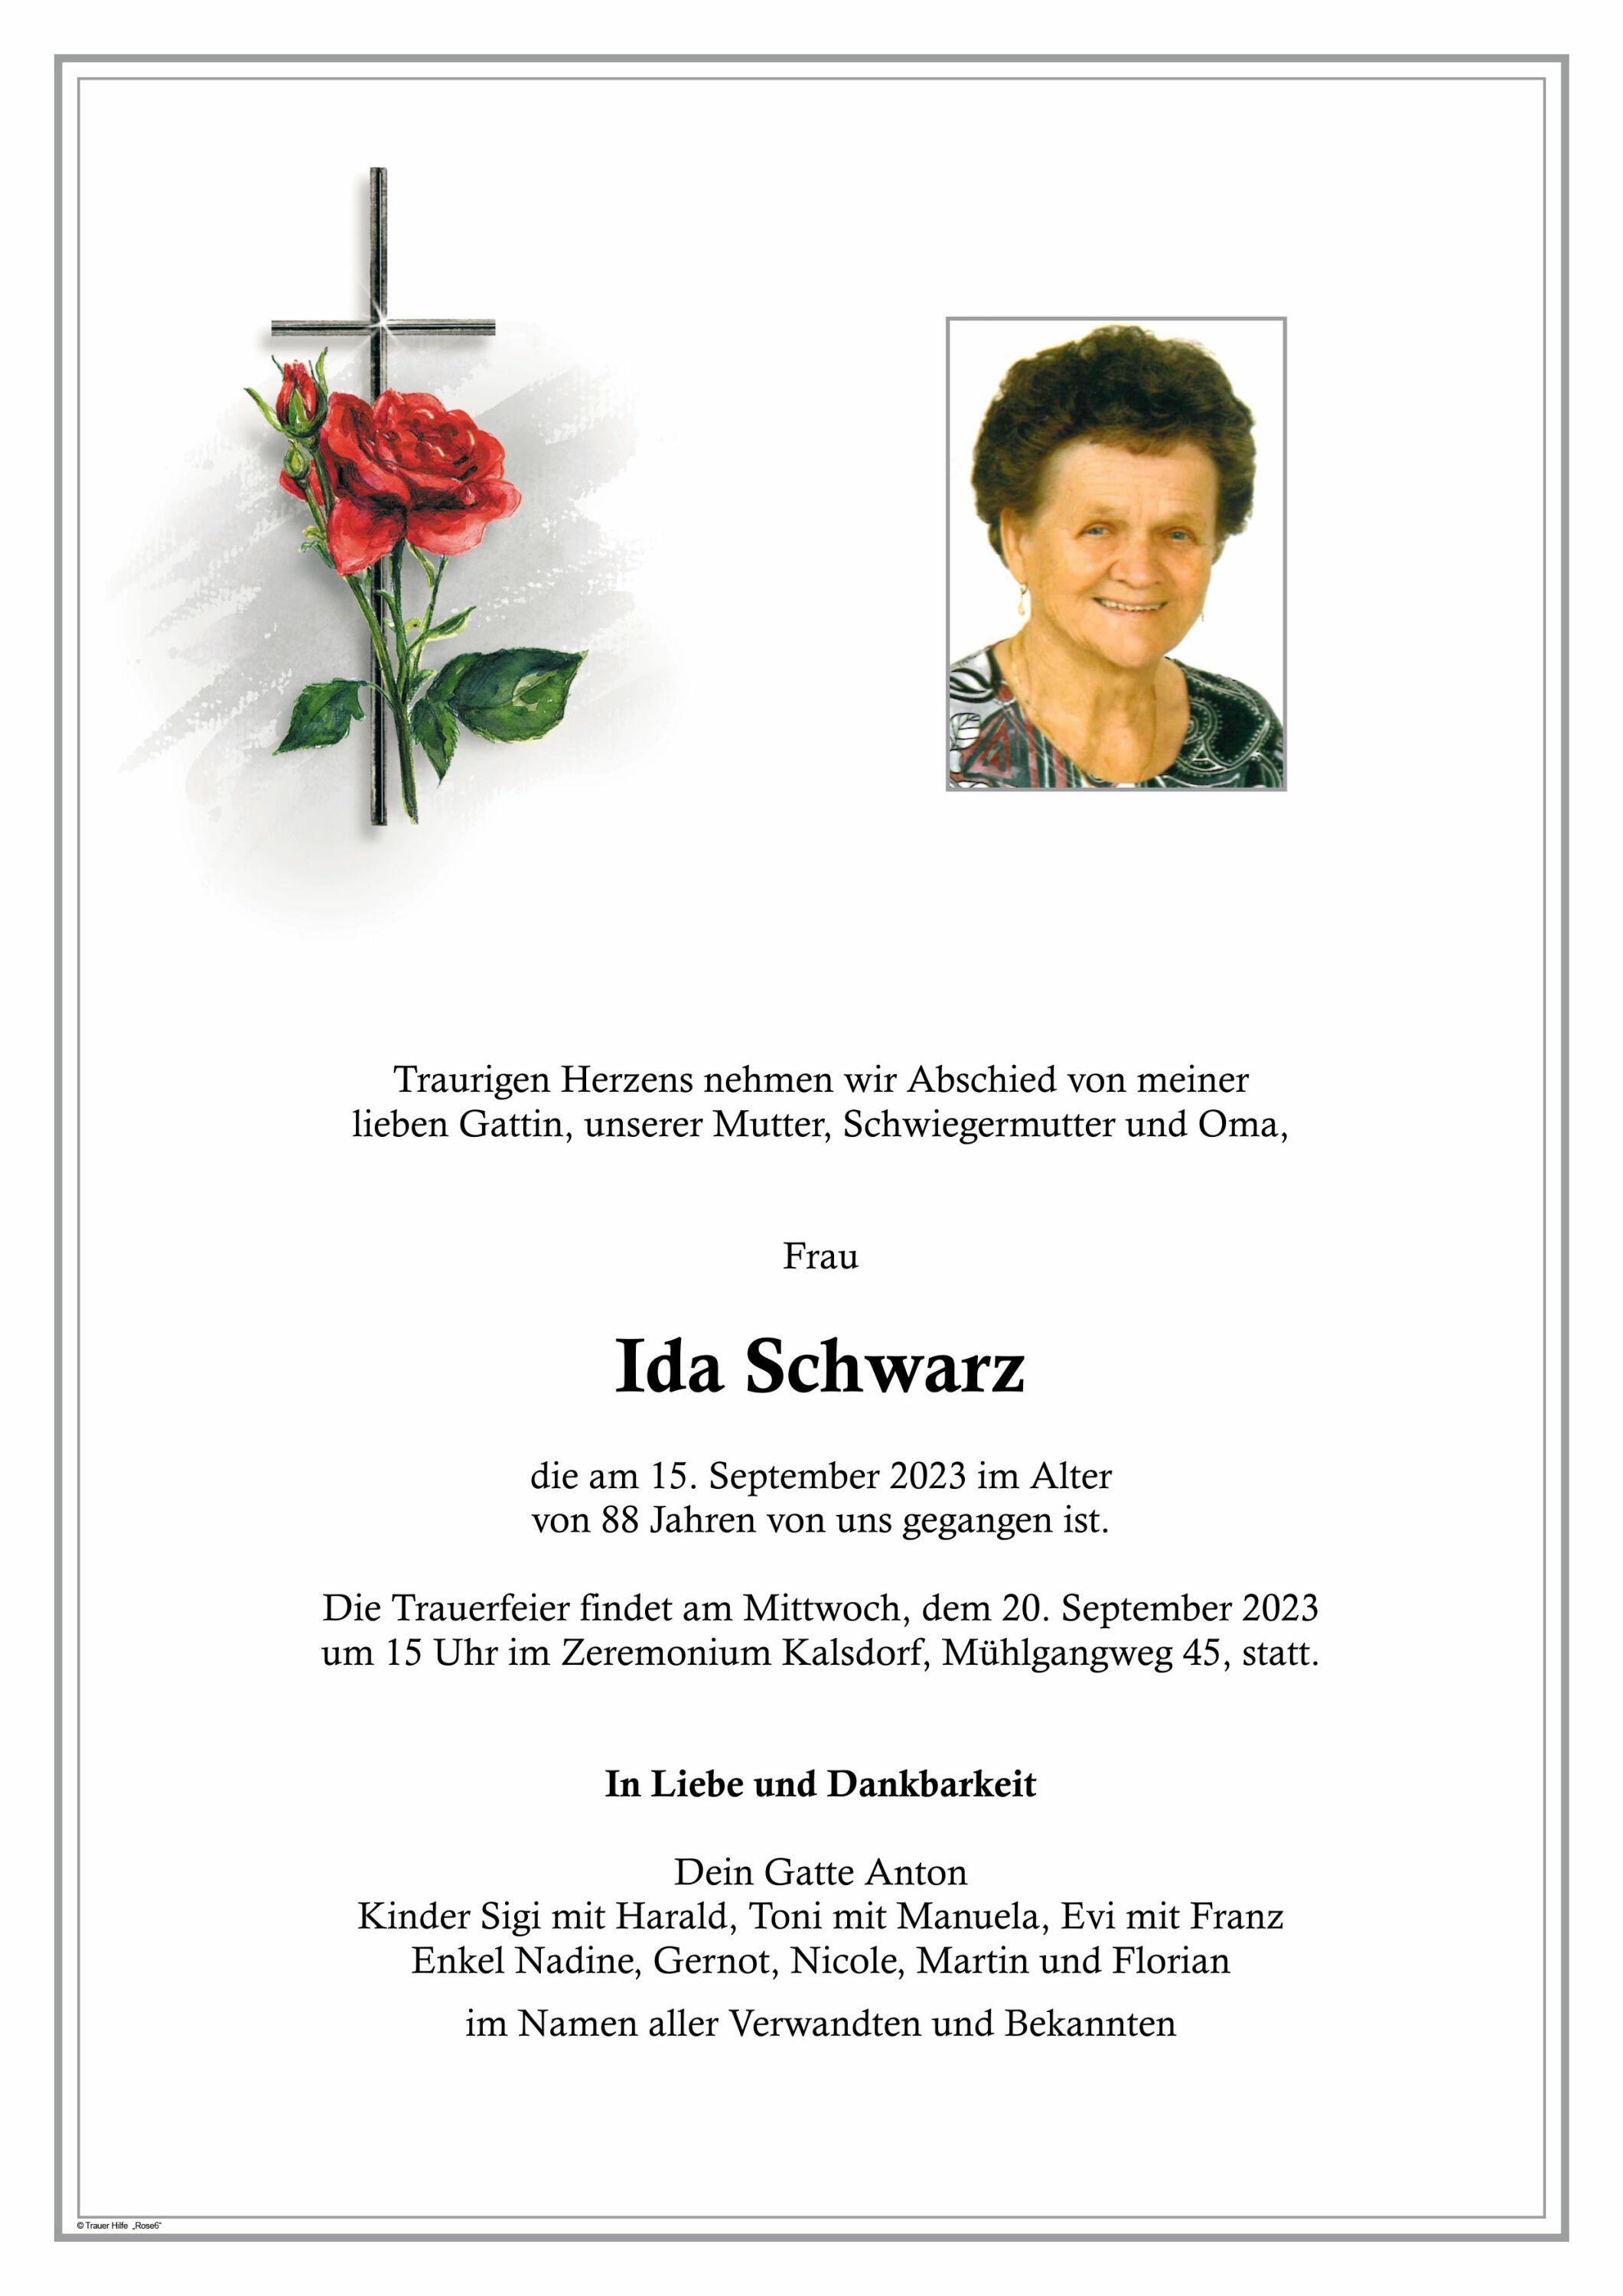 Ida Schwarz